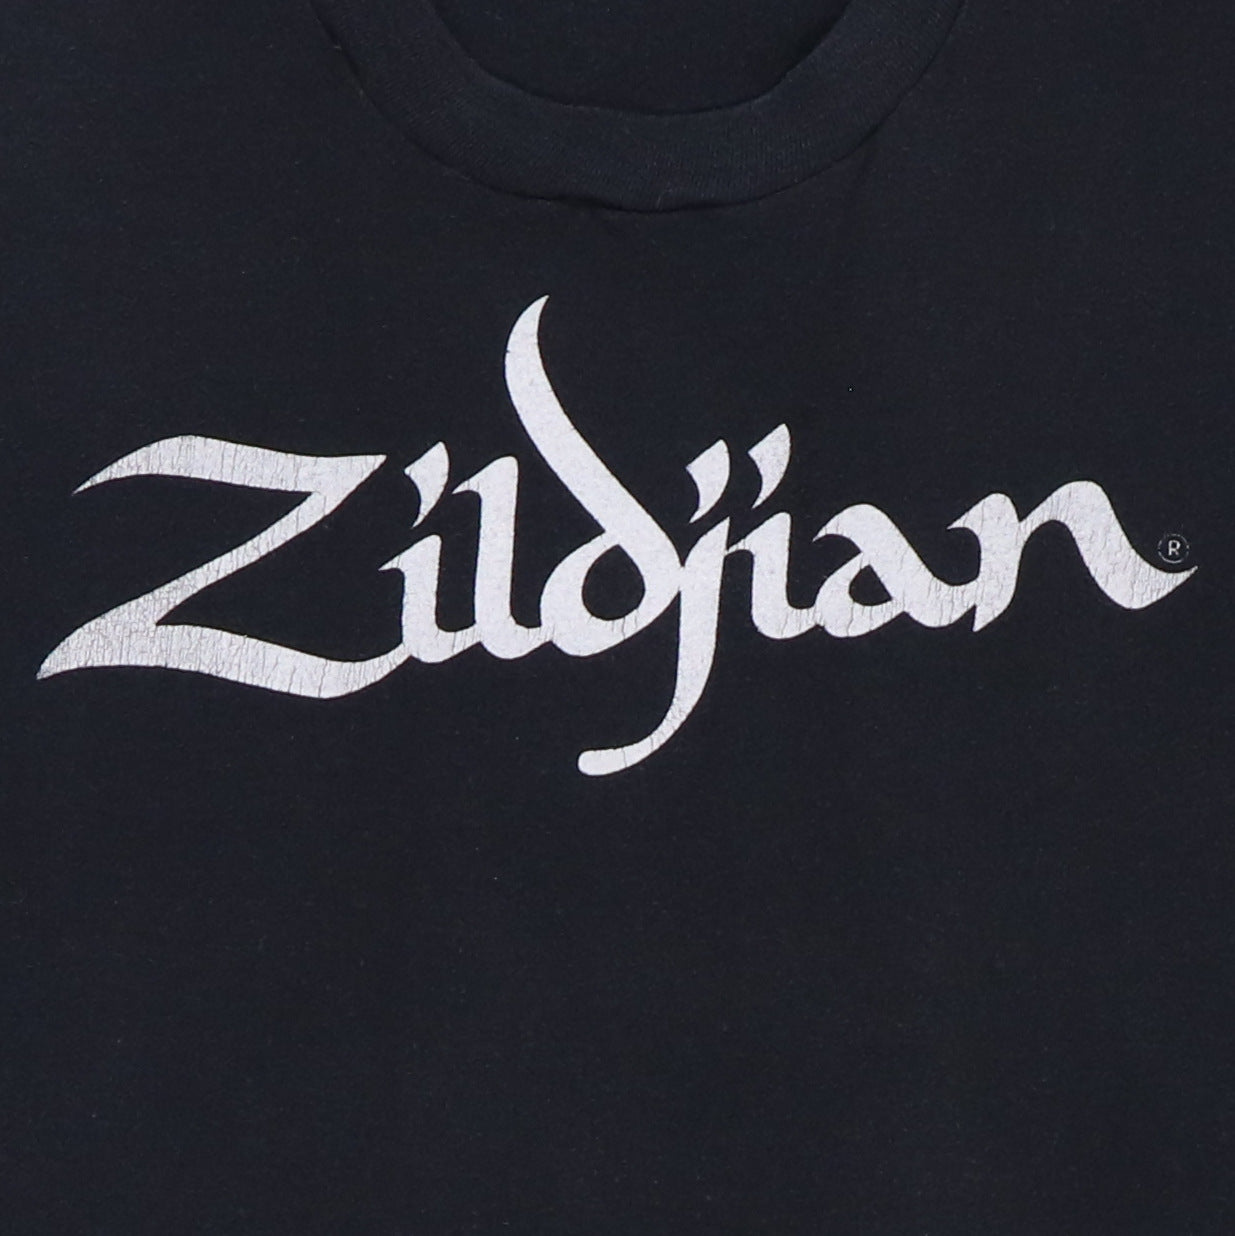 1980s Zildjian The Only Serious Choice Shirt